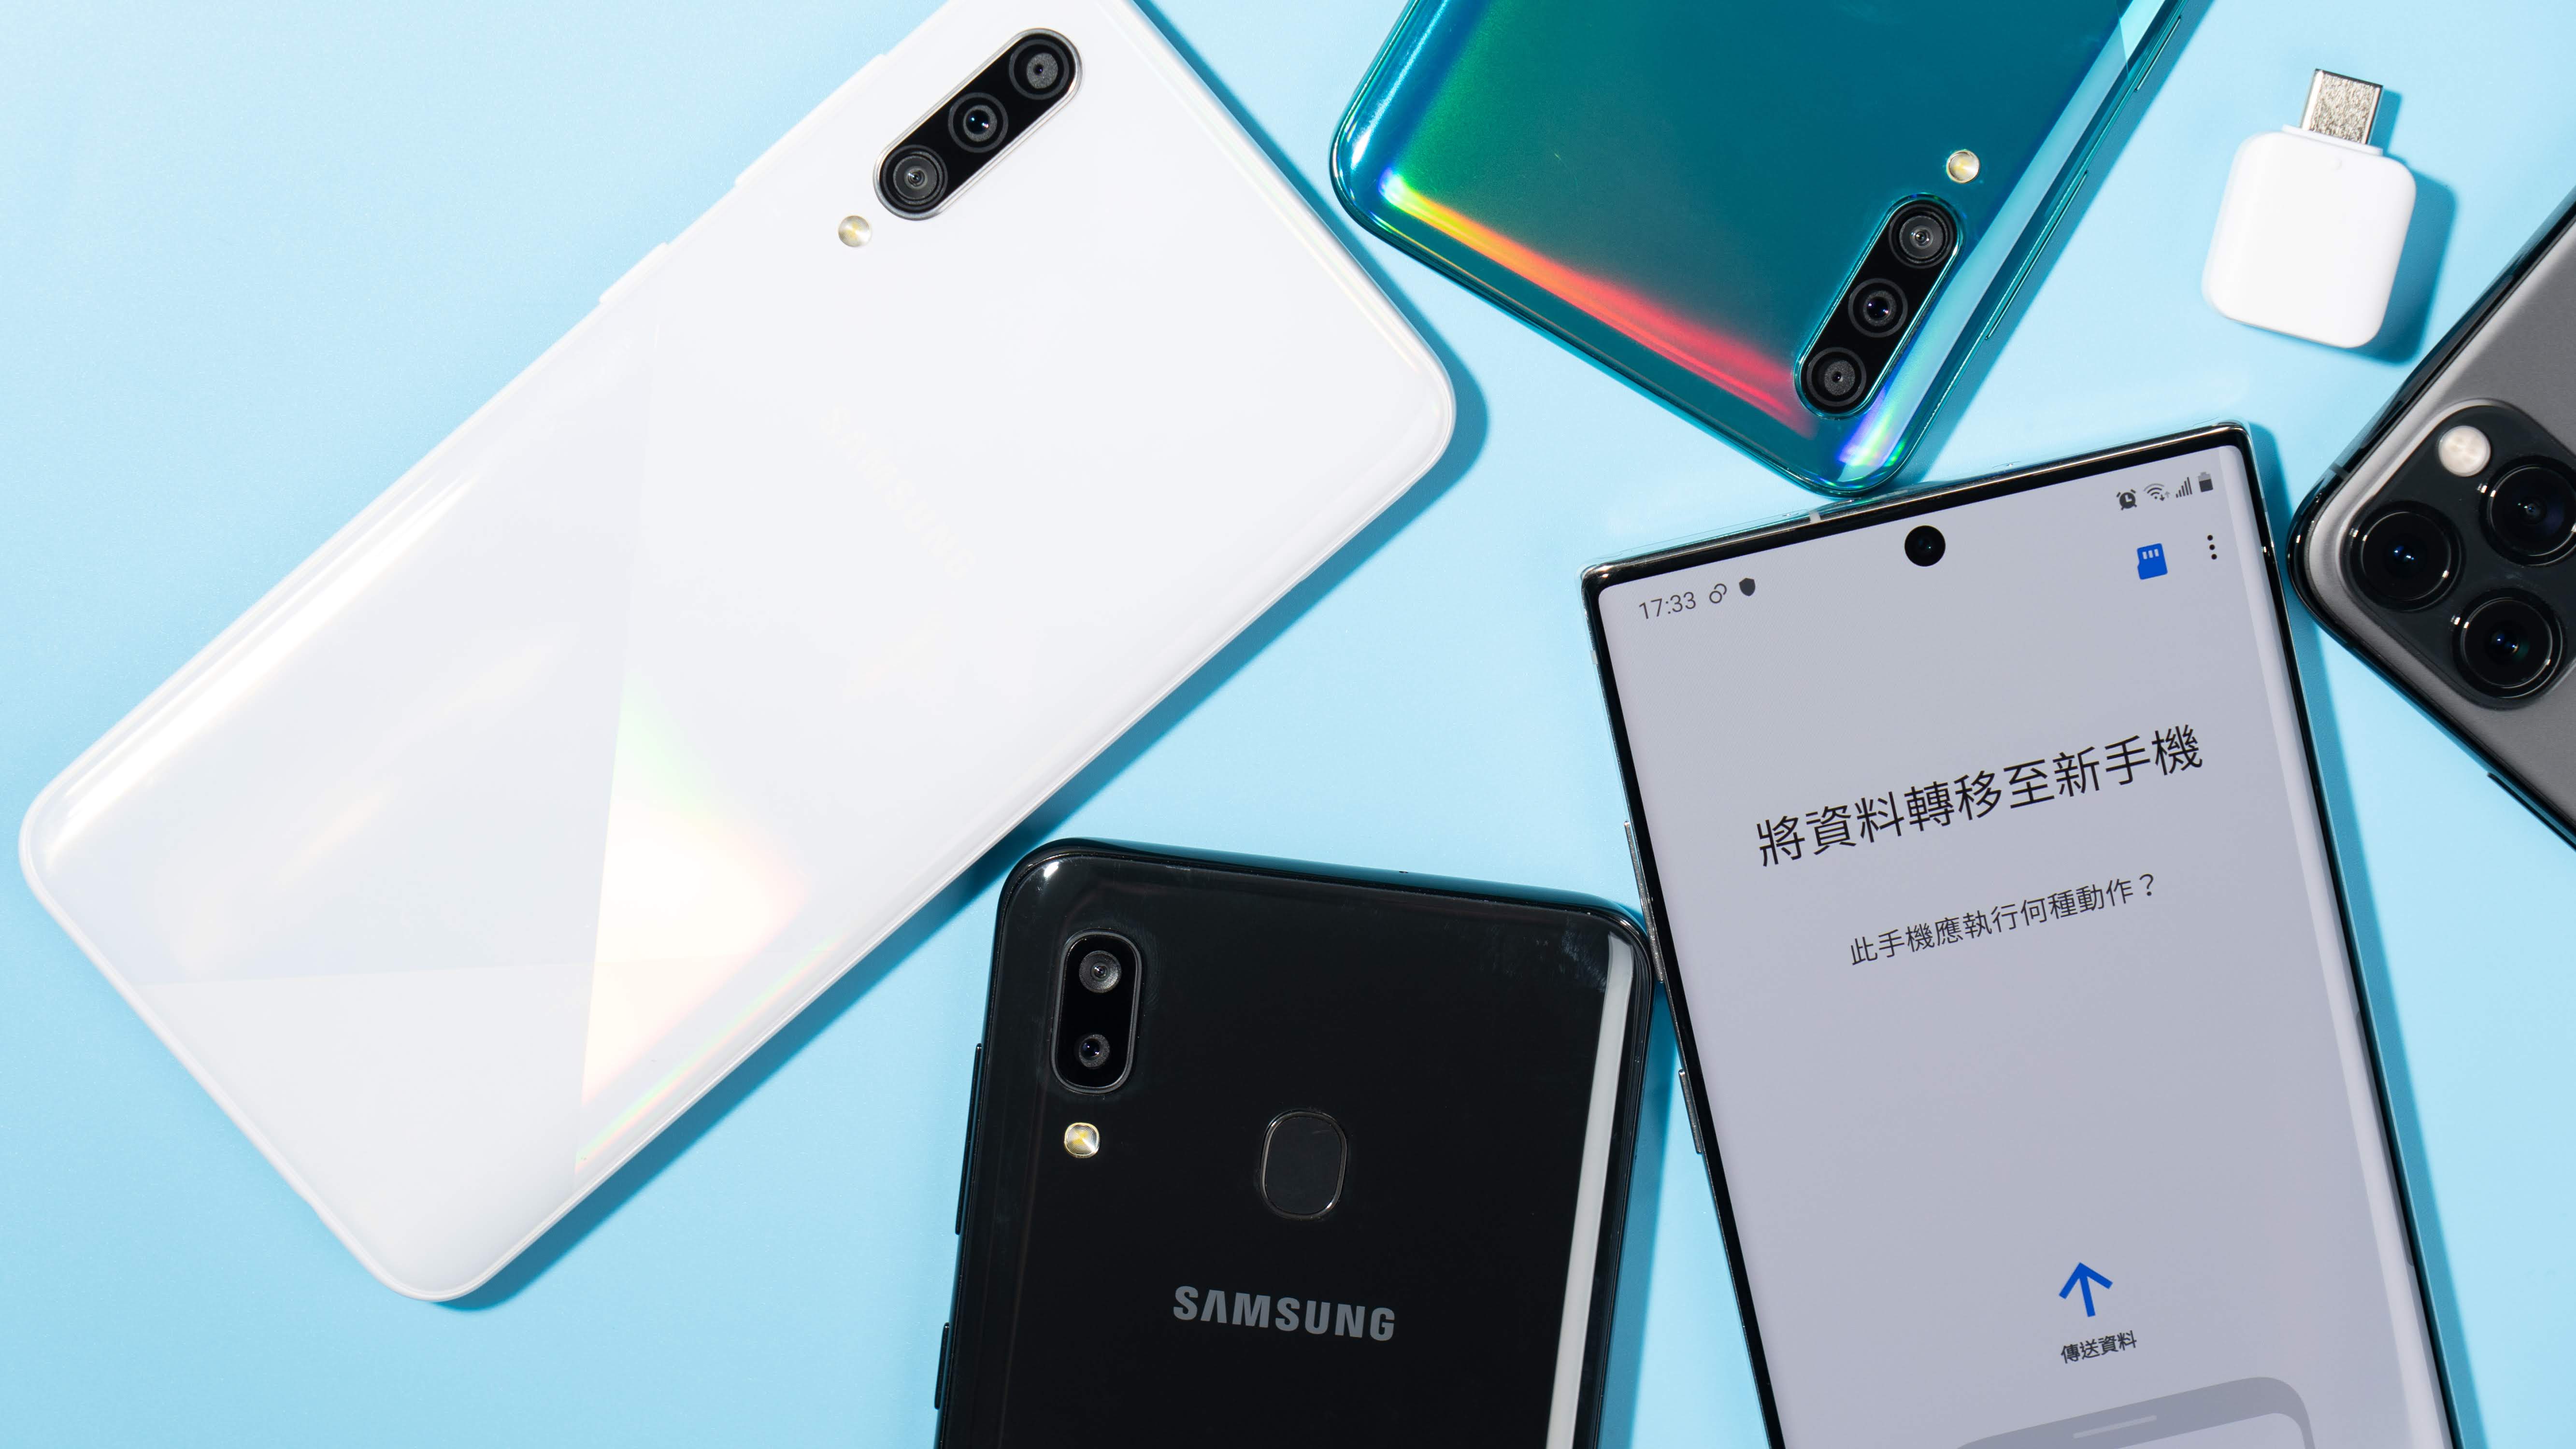 【換機教學】Samsung Smart Switch 換新的三星手機轉移資料超方便！｜iPhone / 非 Android 也能輕鬆轉移到 Samsung 手機、備份到 Galaxy Note10+ - note10 - 科技狗 3C DOG